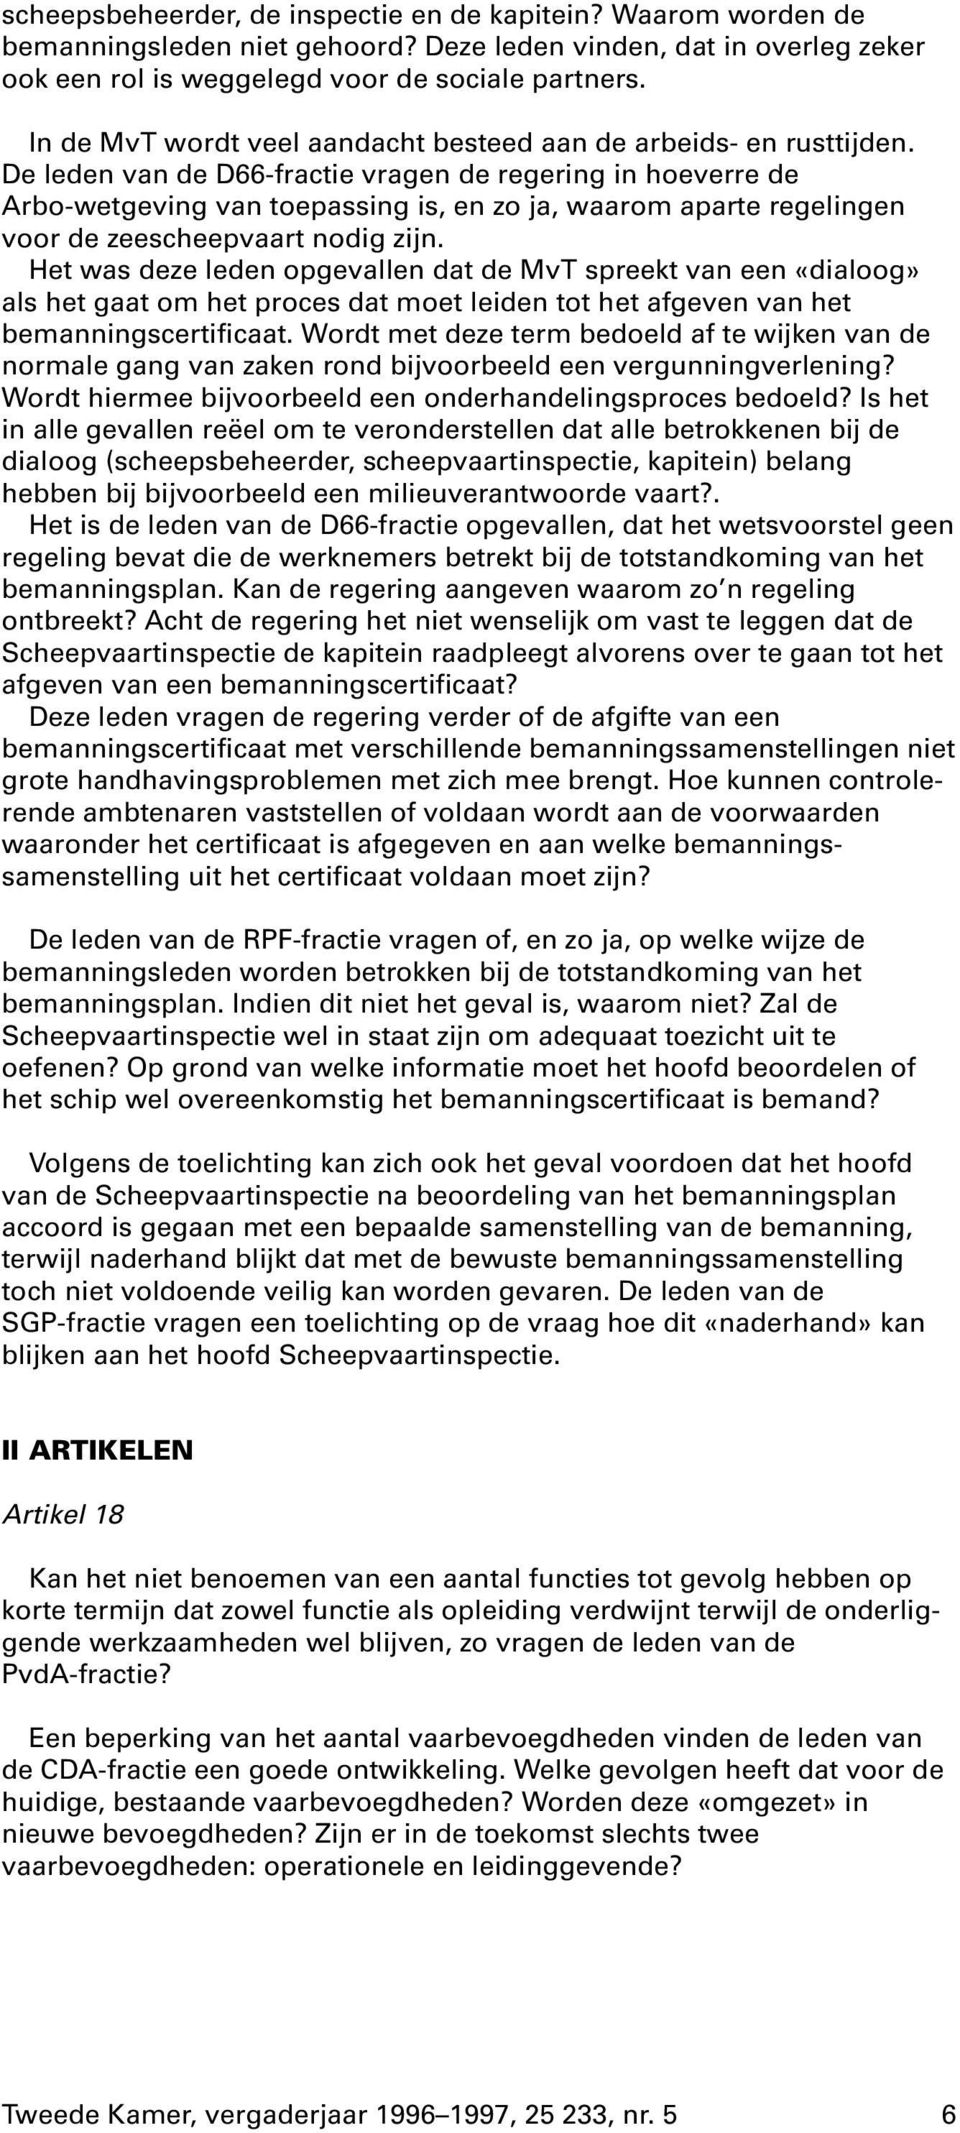 De leden van de D66-fractie vragen de regering in hoeverre de Arbo-wetgeving van toepassing is, en zo ja, waarom aparte regelingen voor de zeescheepvaart nodig zijn.